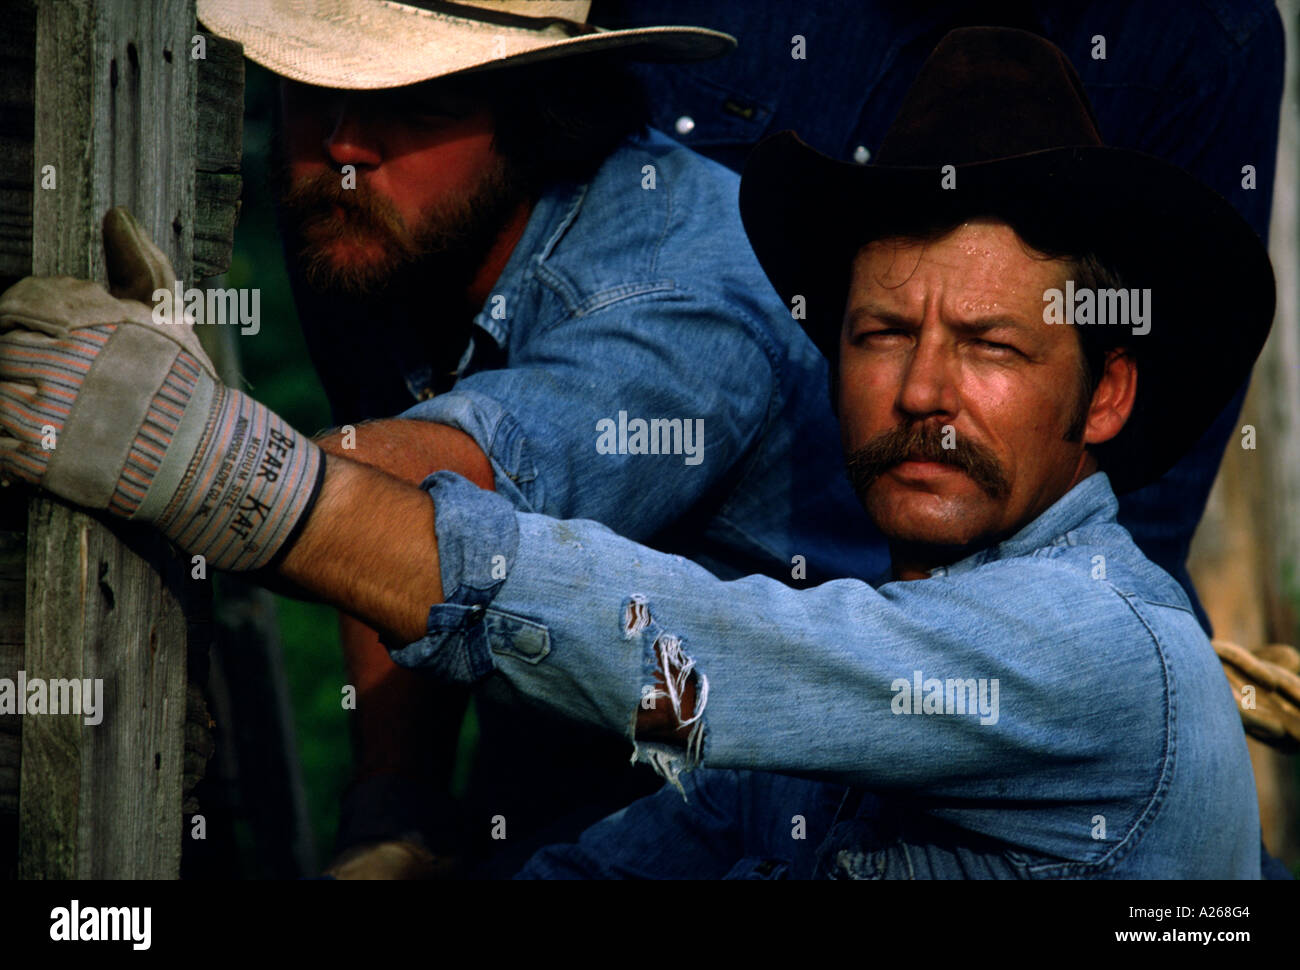 Ein Kuhhirte sichert einen Zaunpfahl auf einen gebrochenen Corral, während sein Kumpel versucht, es auf einer Ranch in Texas zu beheben Stockfoto